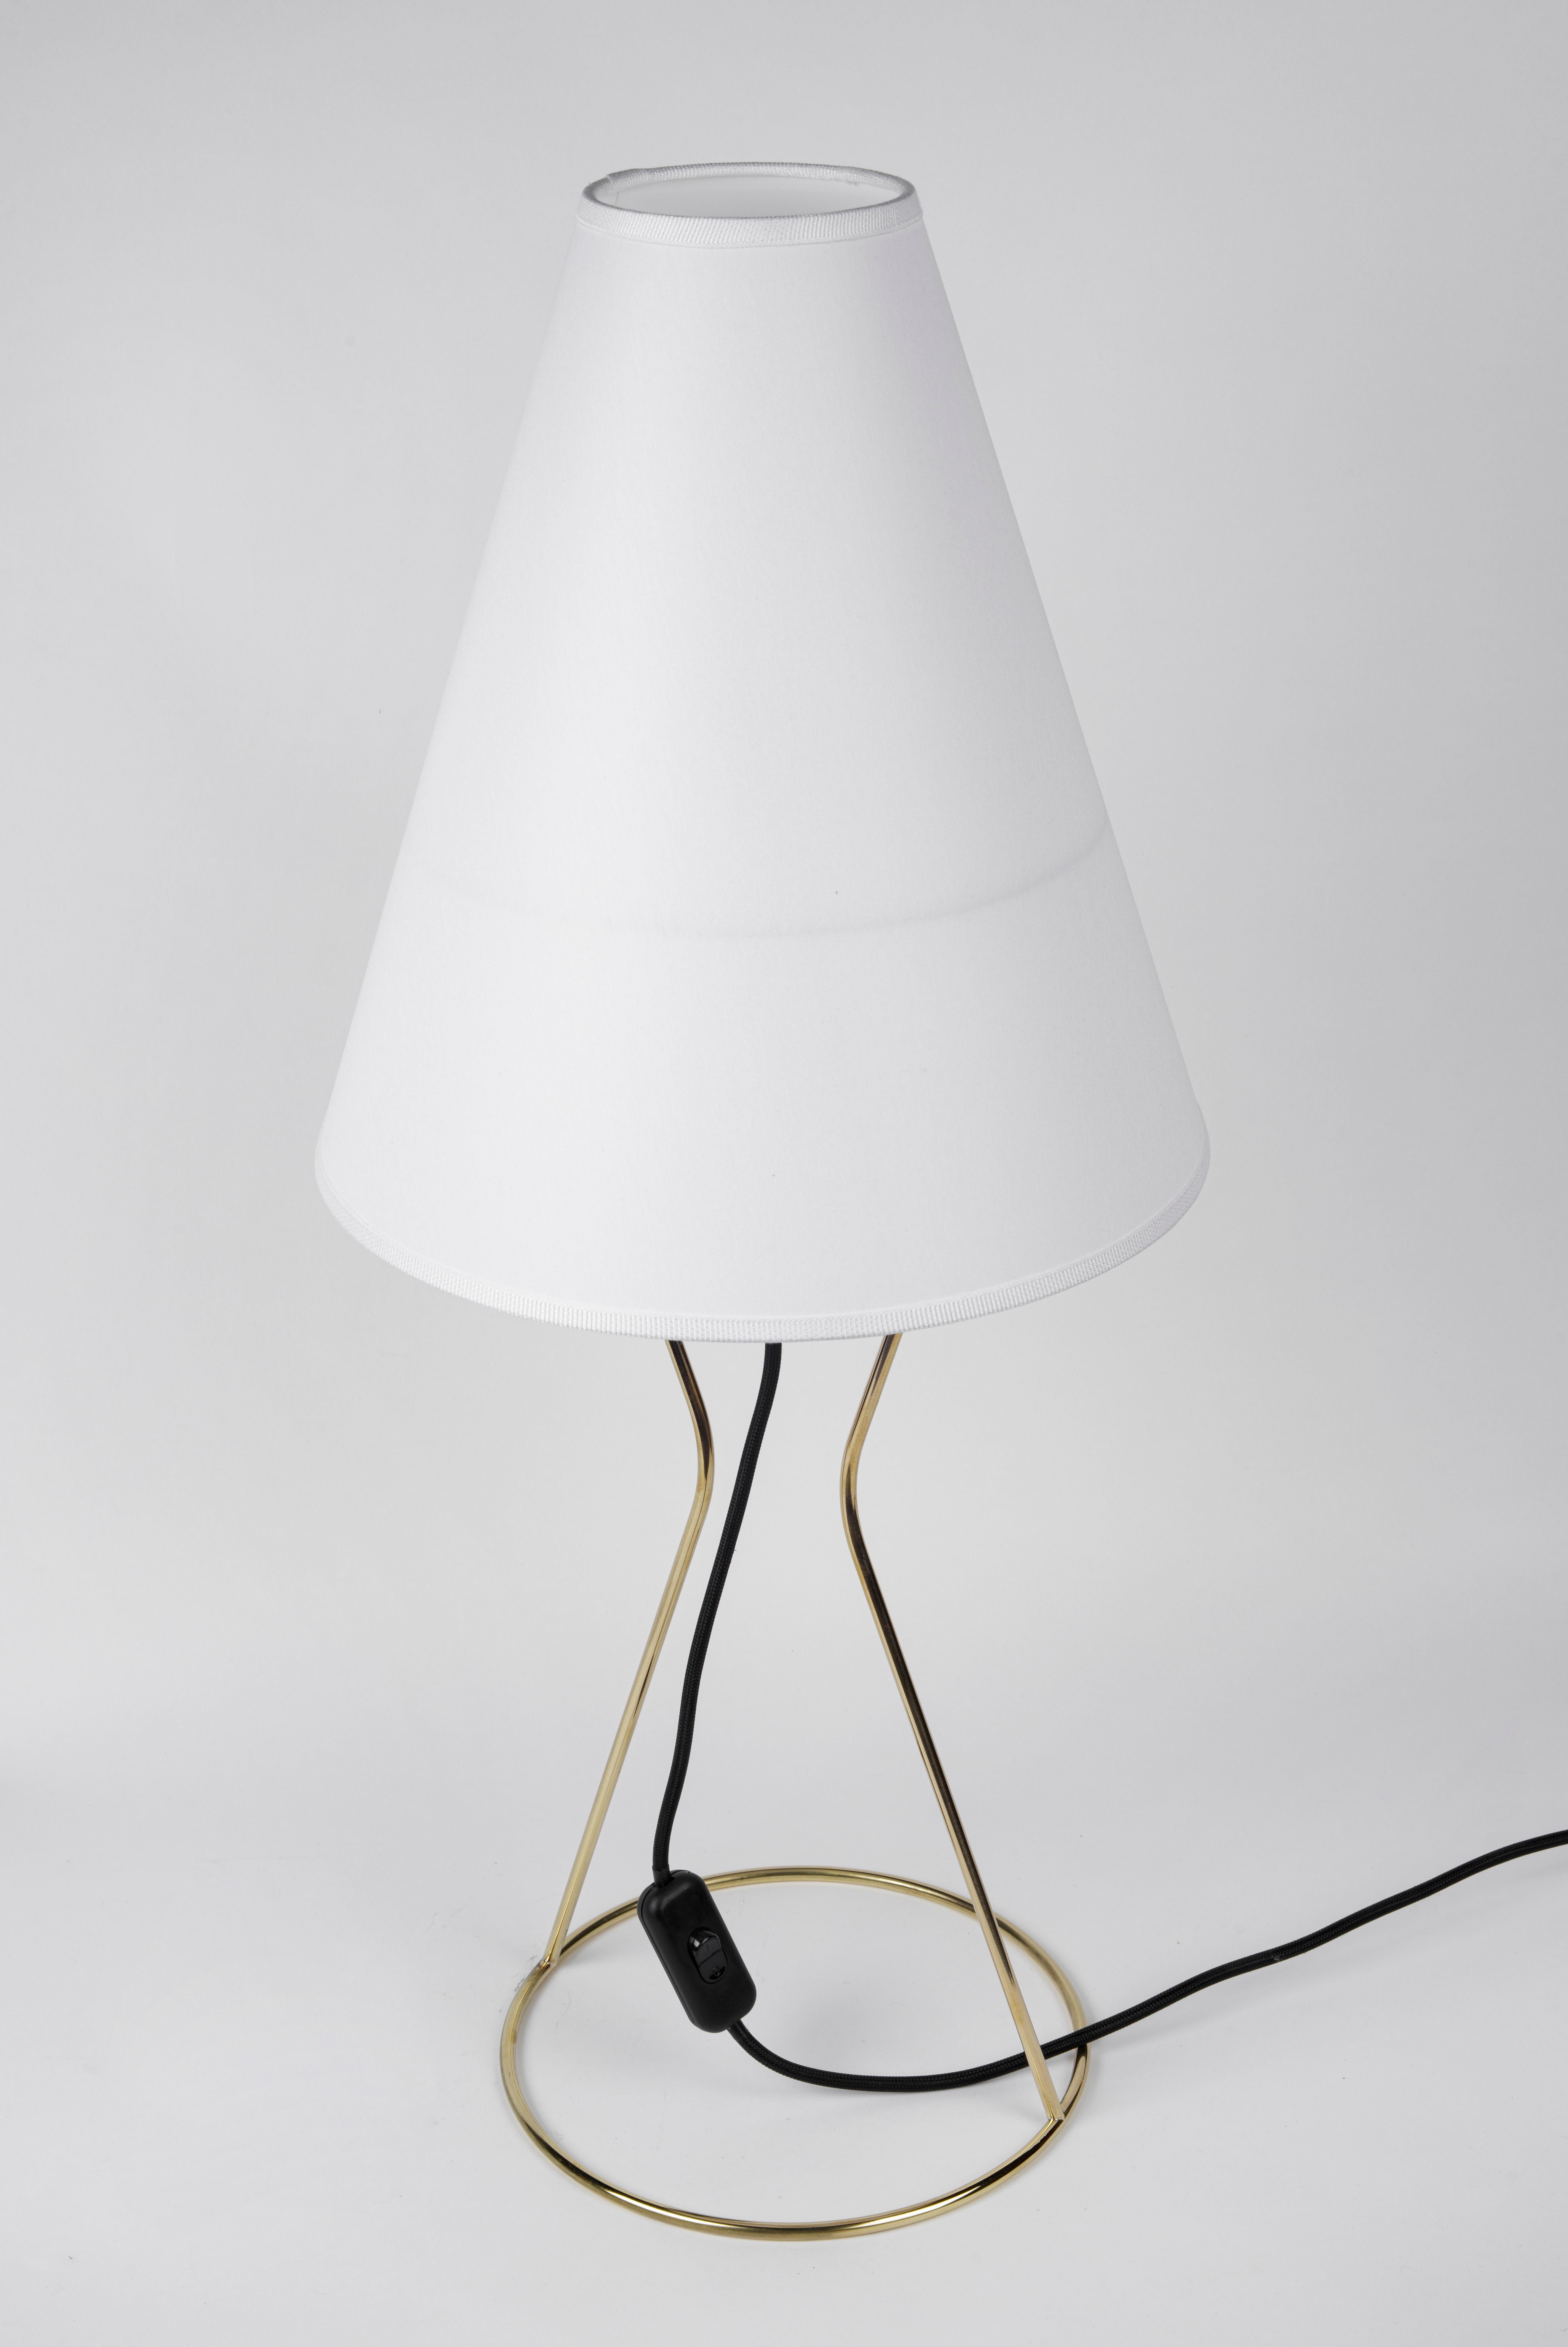 Austrian Carl Auböck #4105-2 Vice Versa Table Lamp For Sale